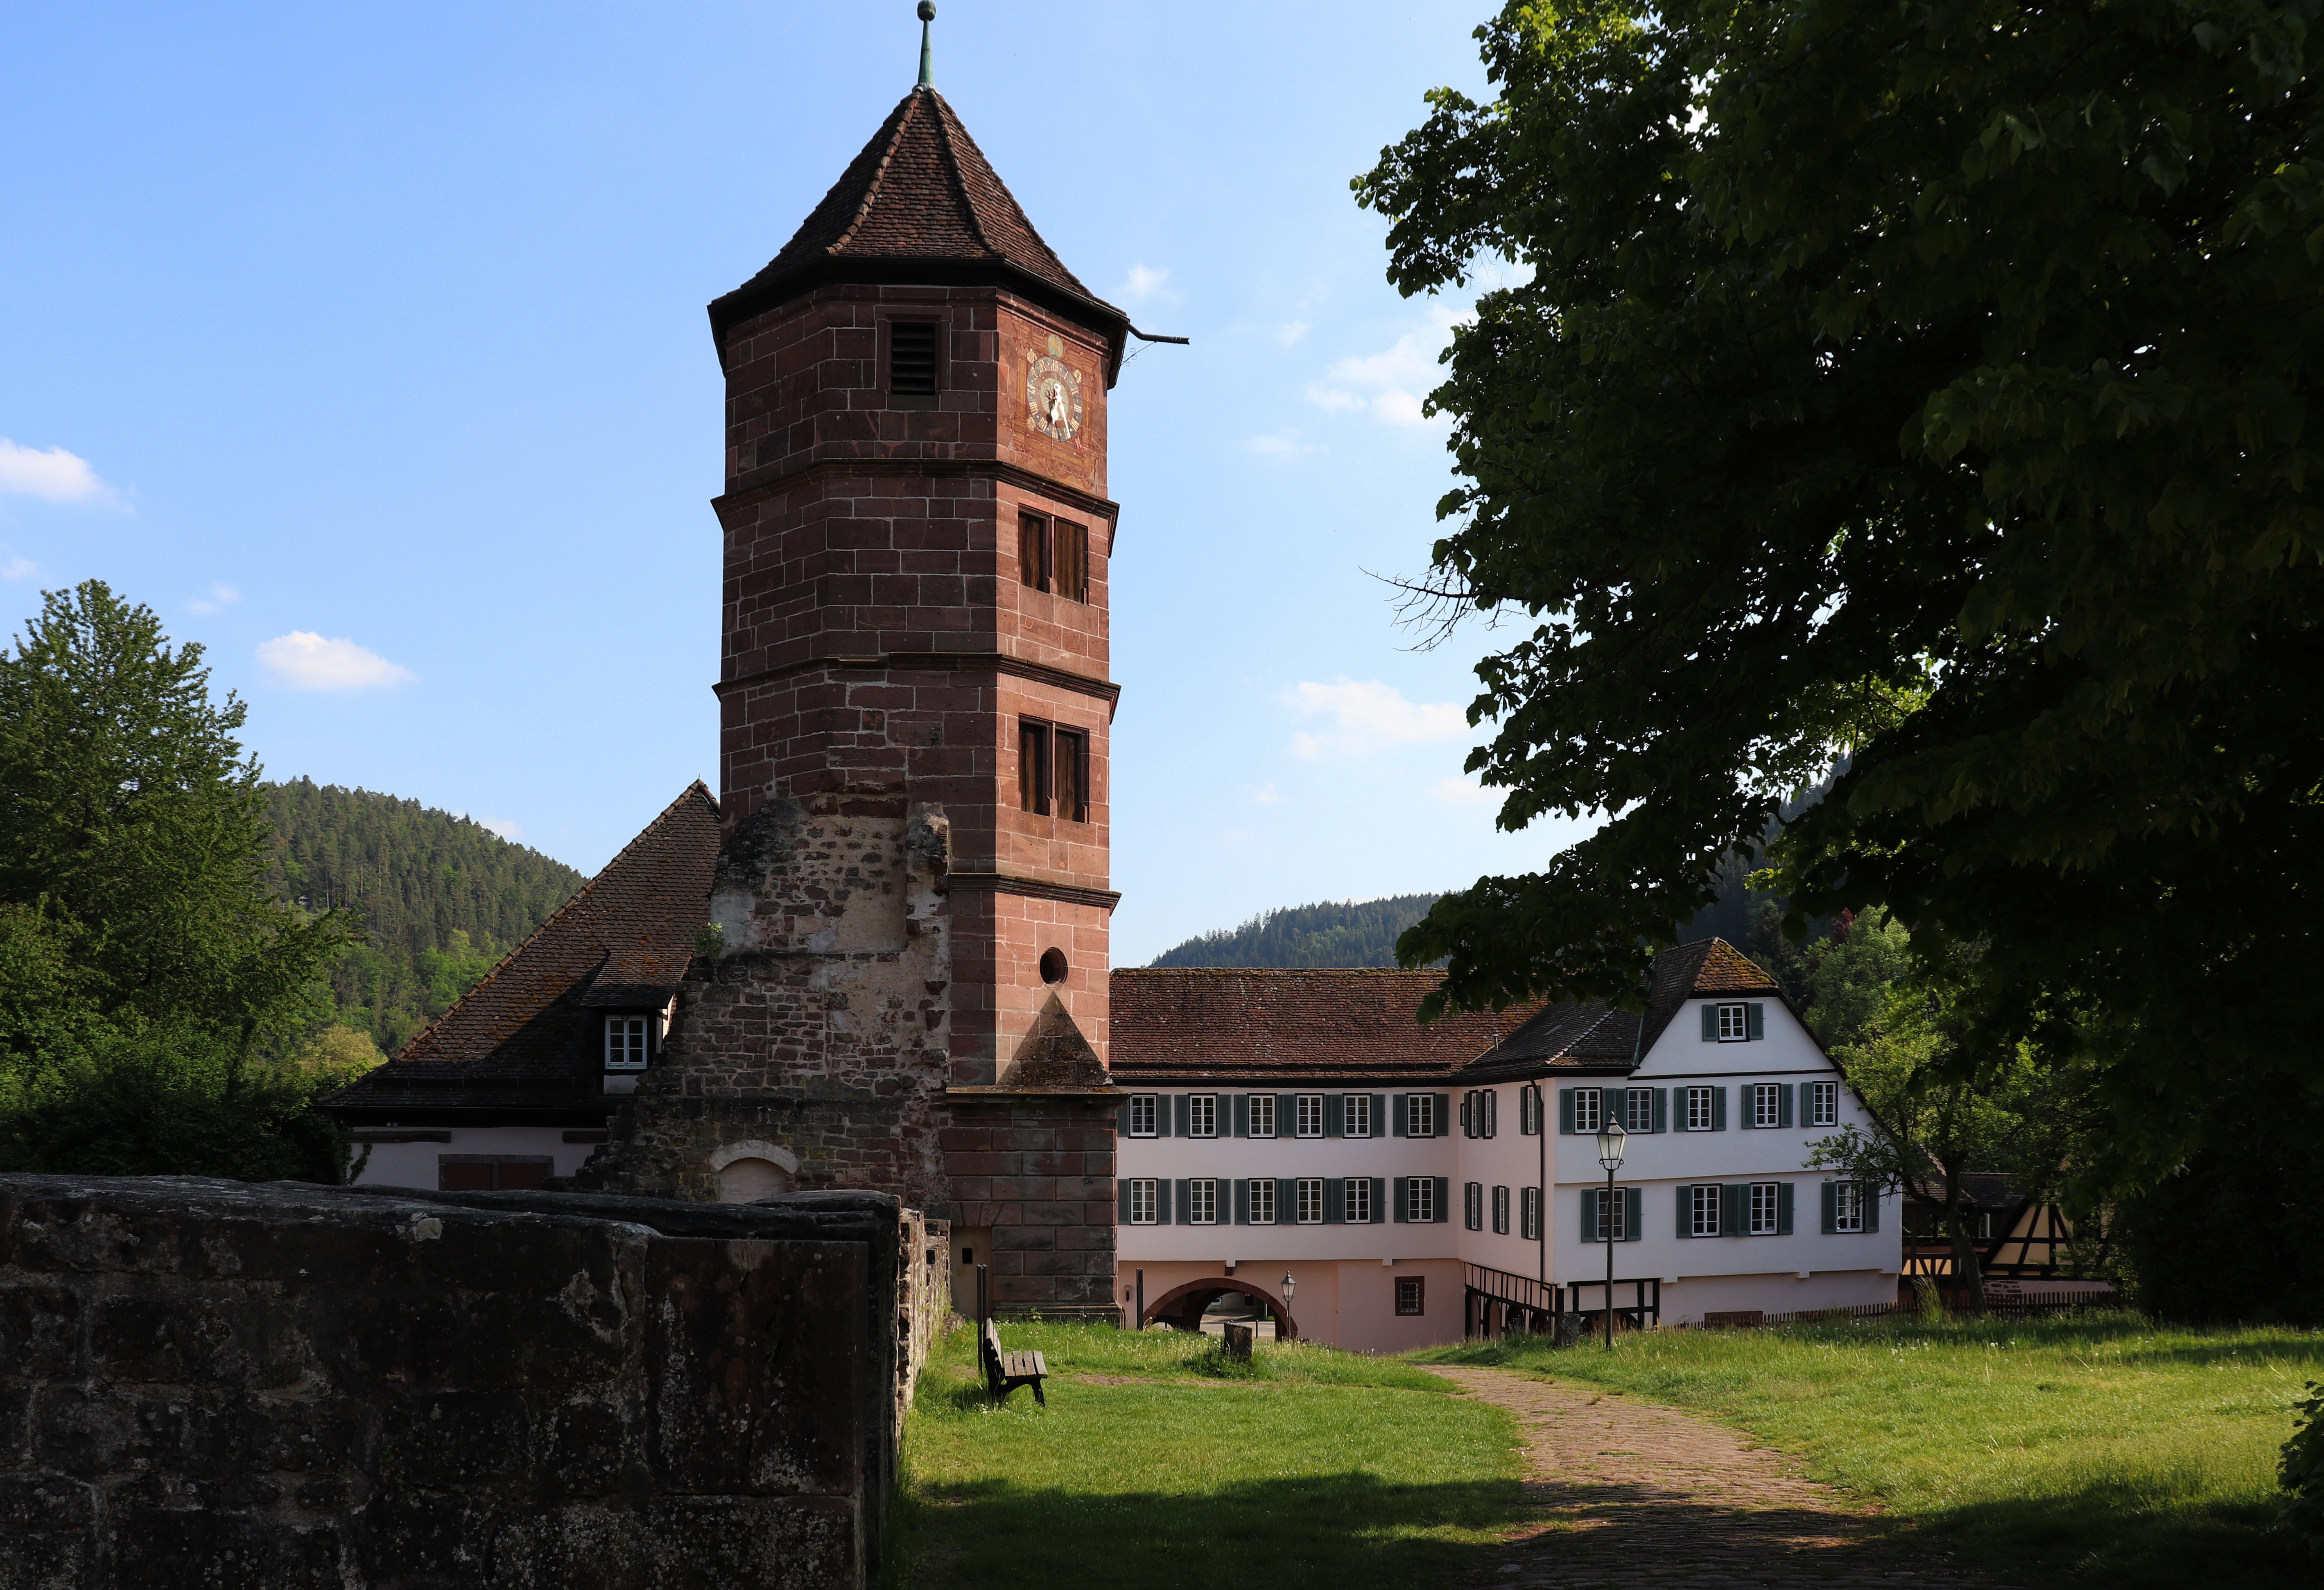 Hirsau / Kloster St. Peter und Paul mit Schlossturm